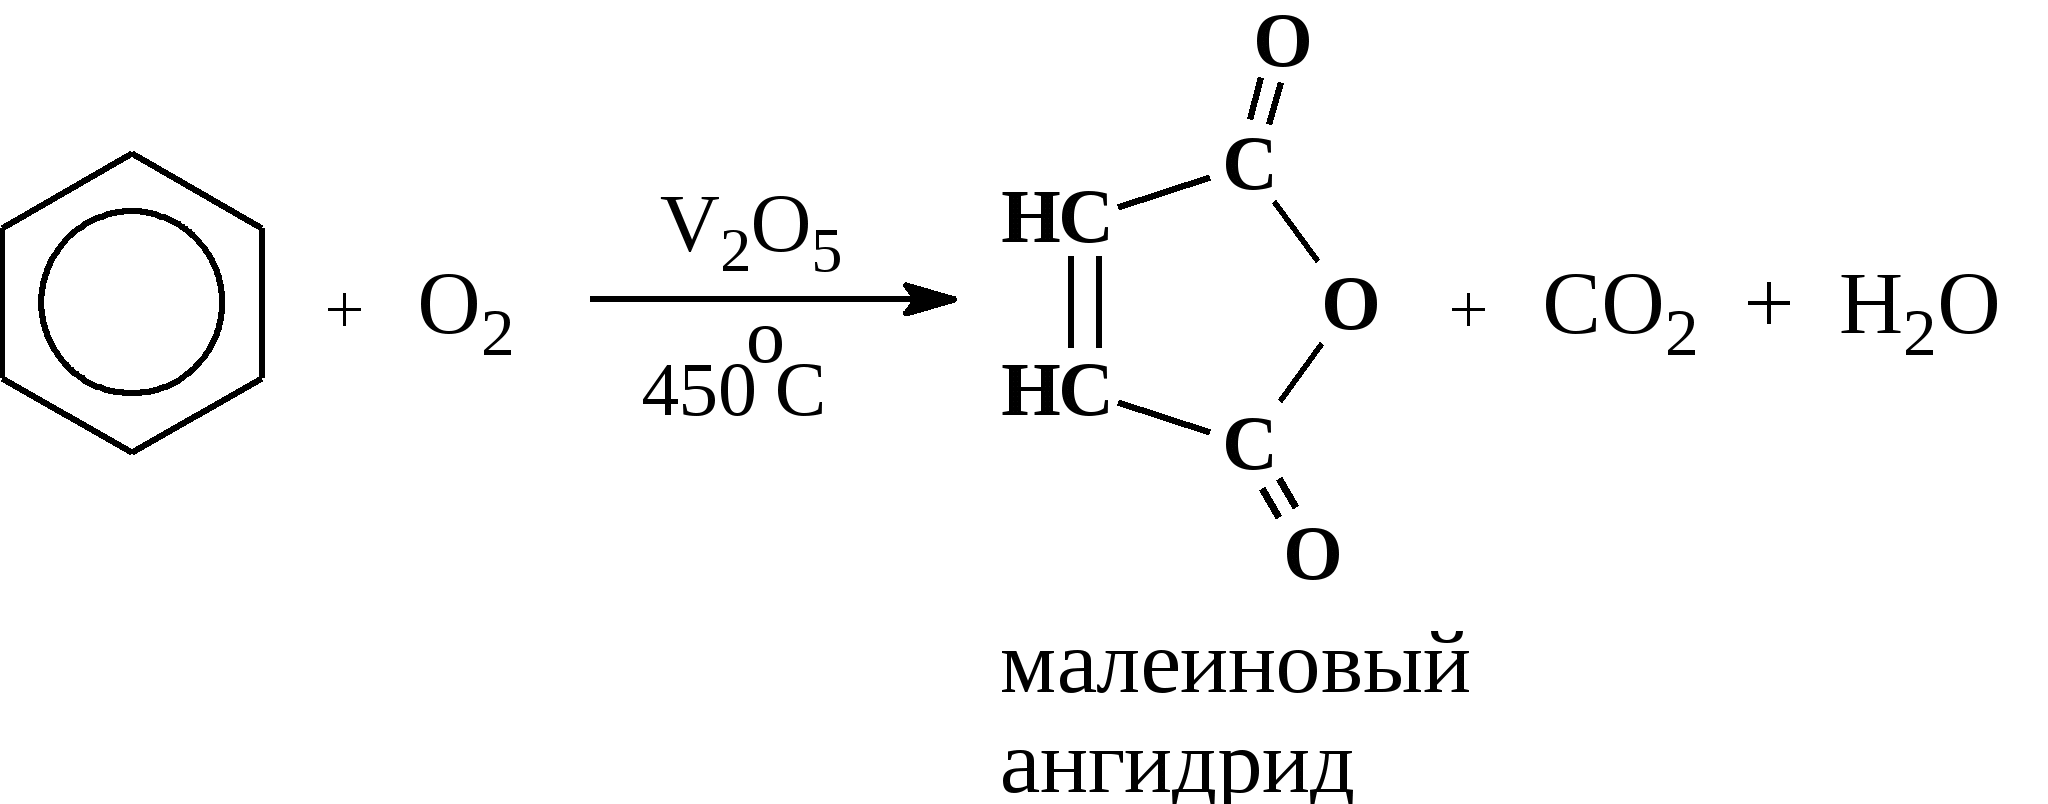 Каталитическое окисление бензола кислородом. Окисление бензола v2o5. Окисление бензола кислородом при катализаторе v2o5. Каталитическое окисление метилбензола. Бензол и кислород